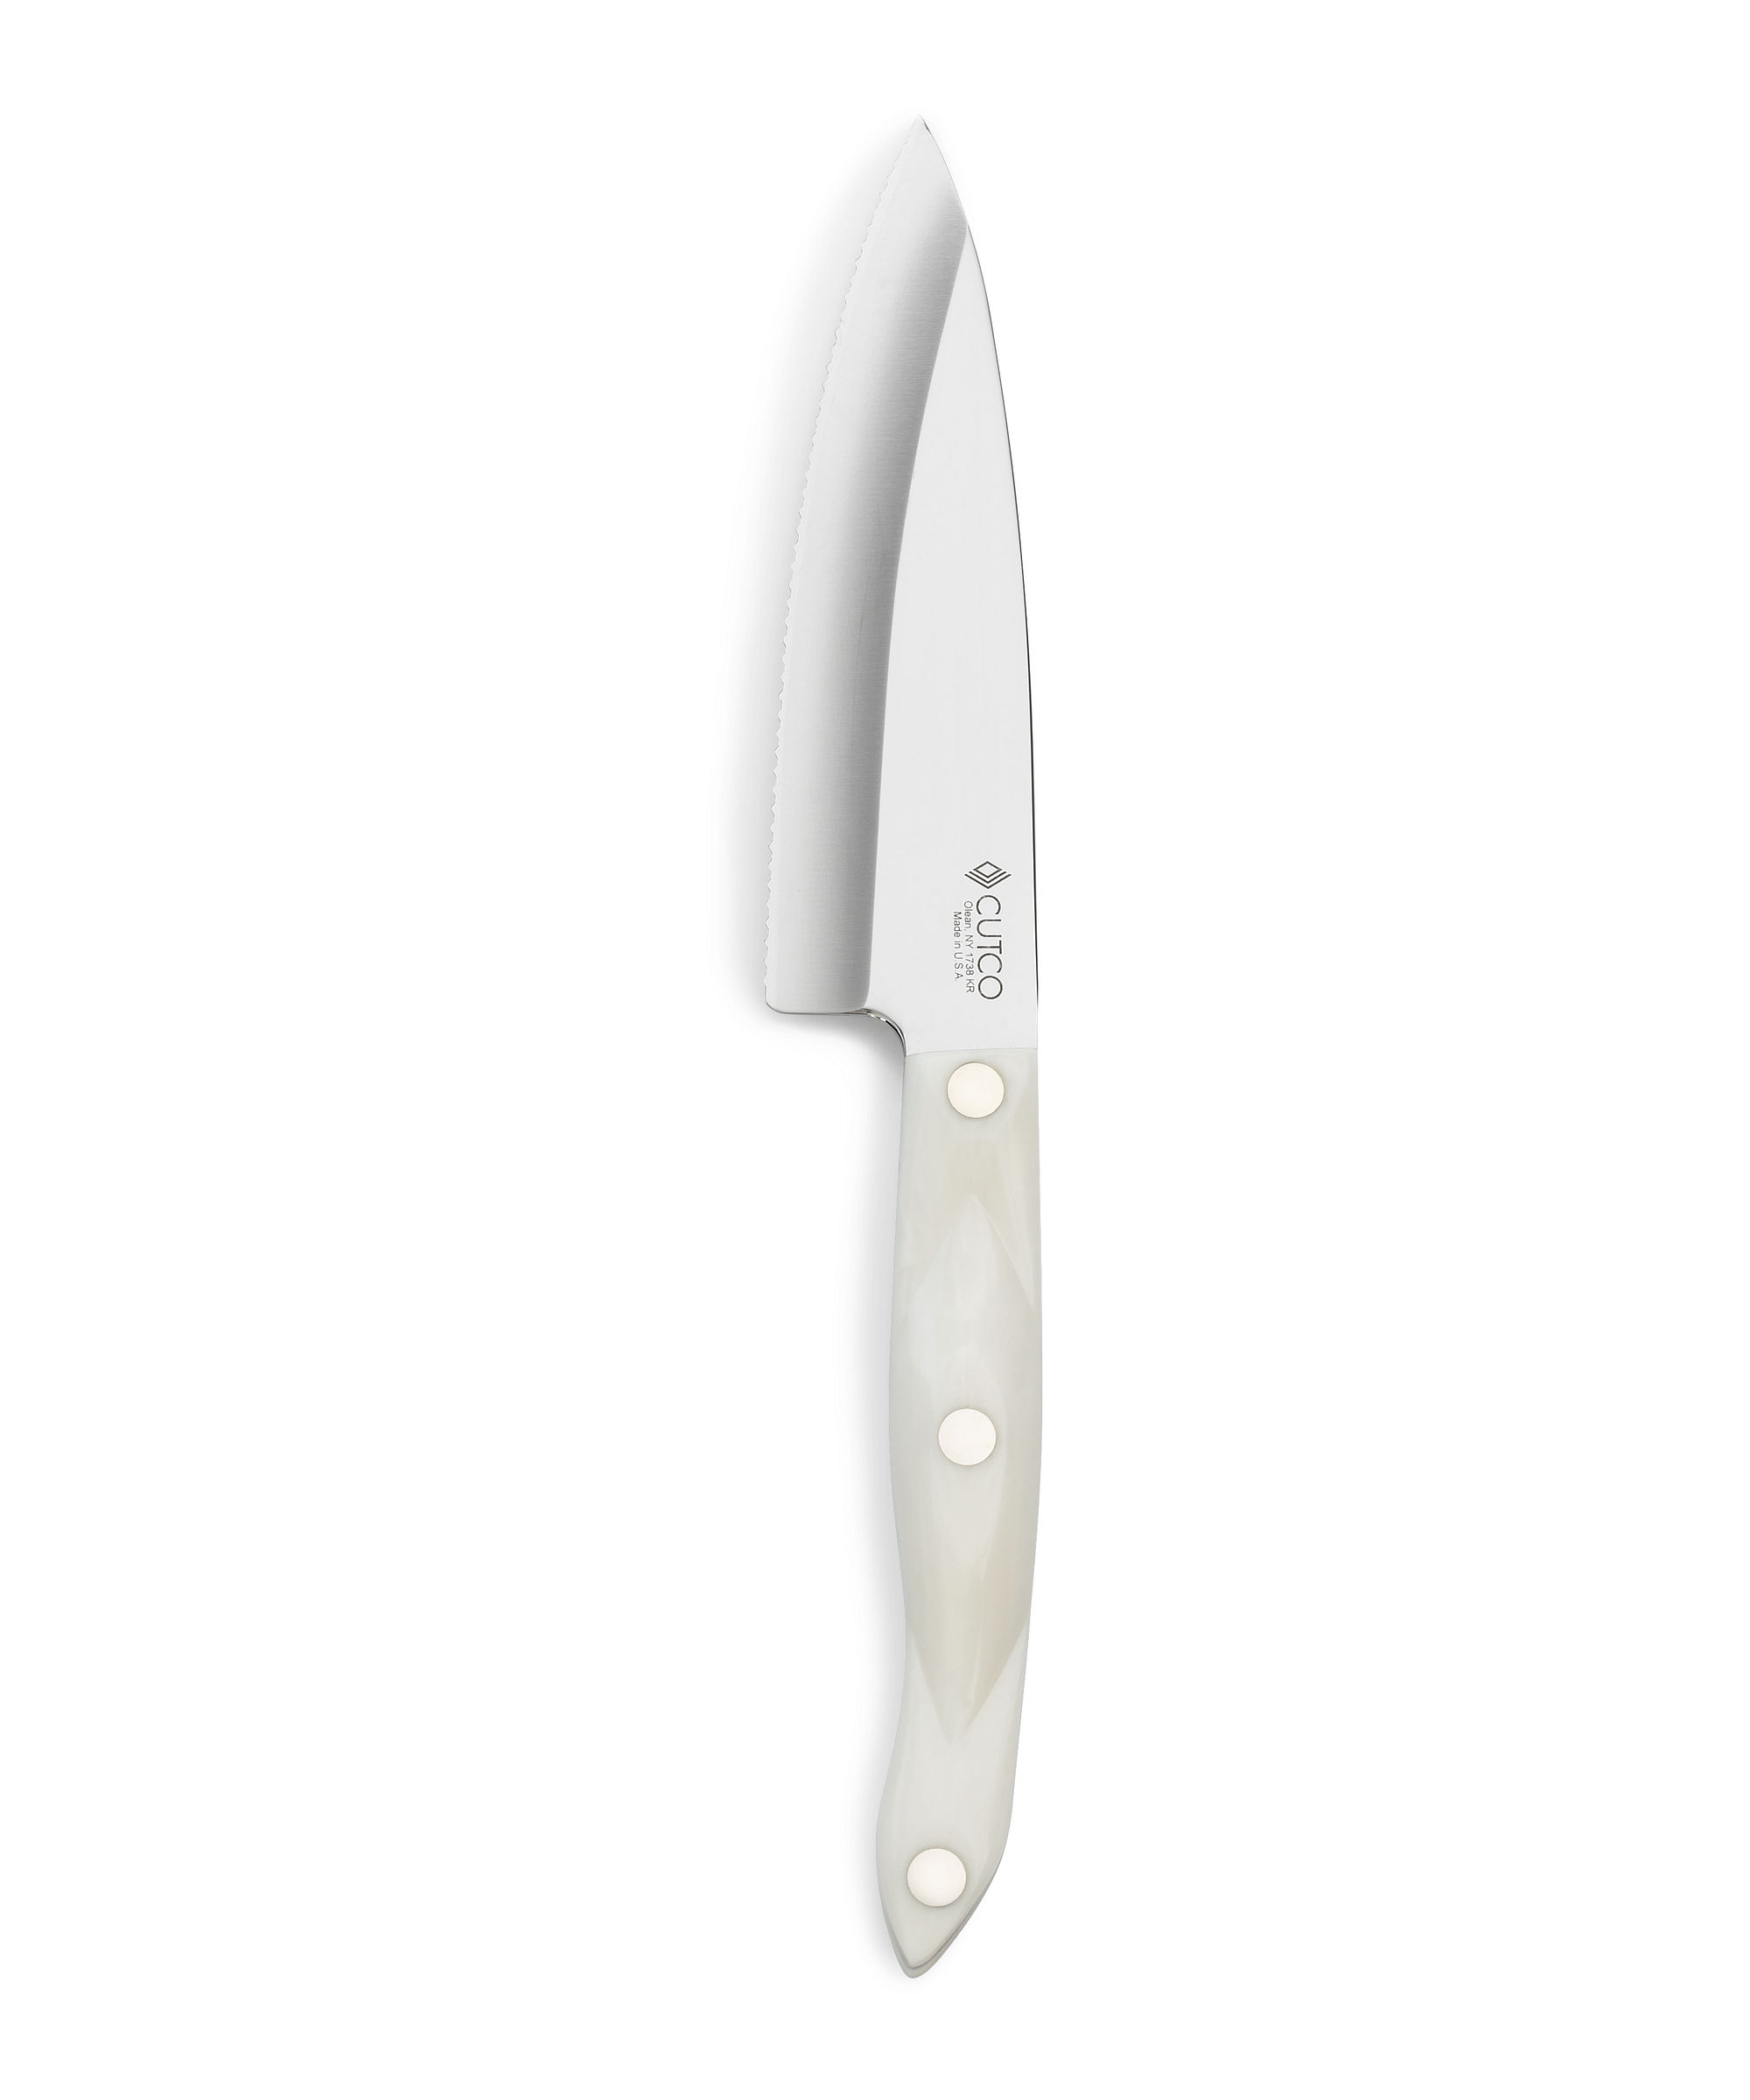 Cutco 1738 Gourmet Prep Knife | Classic (Brown) Handle | Forever Guarantee